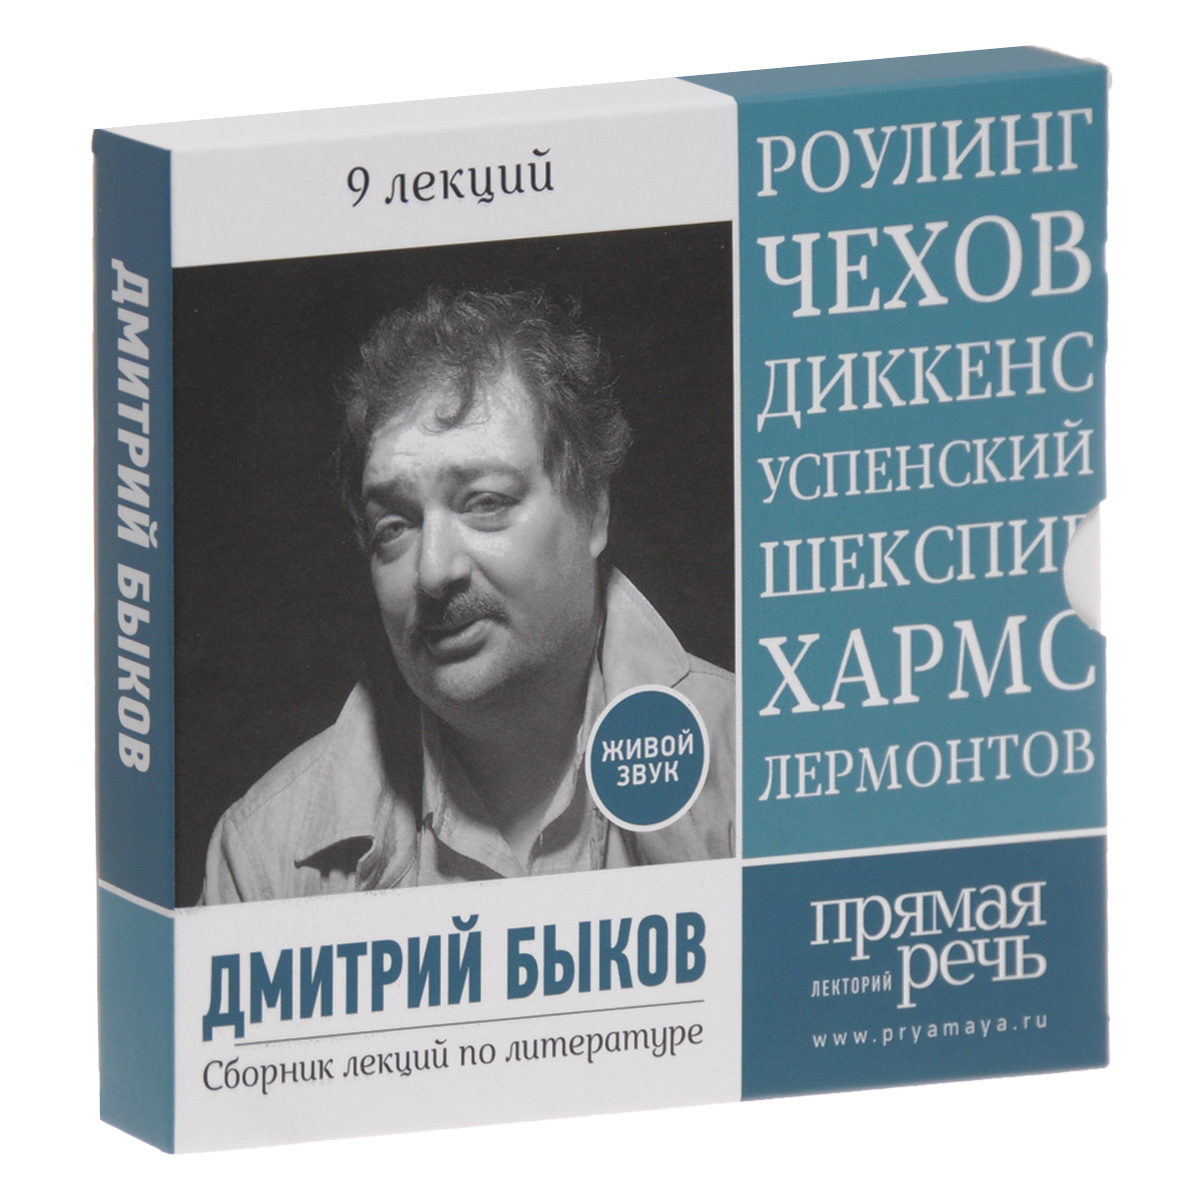 Дмитрий Быков. Сборник лекций по литературе (аудиокнига на 3 CD)